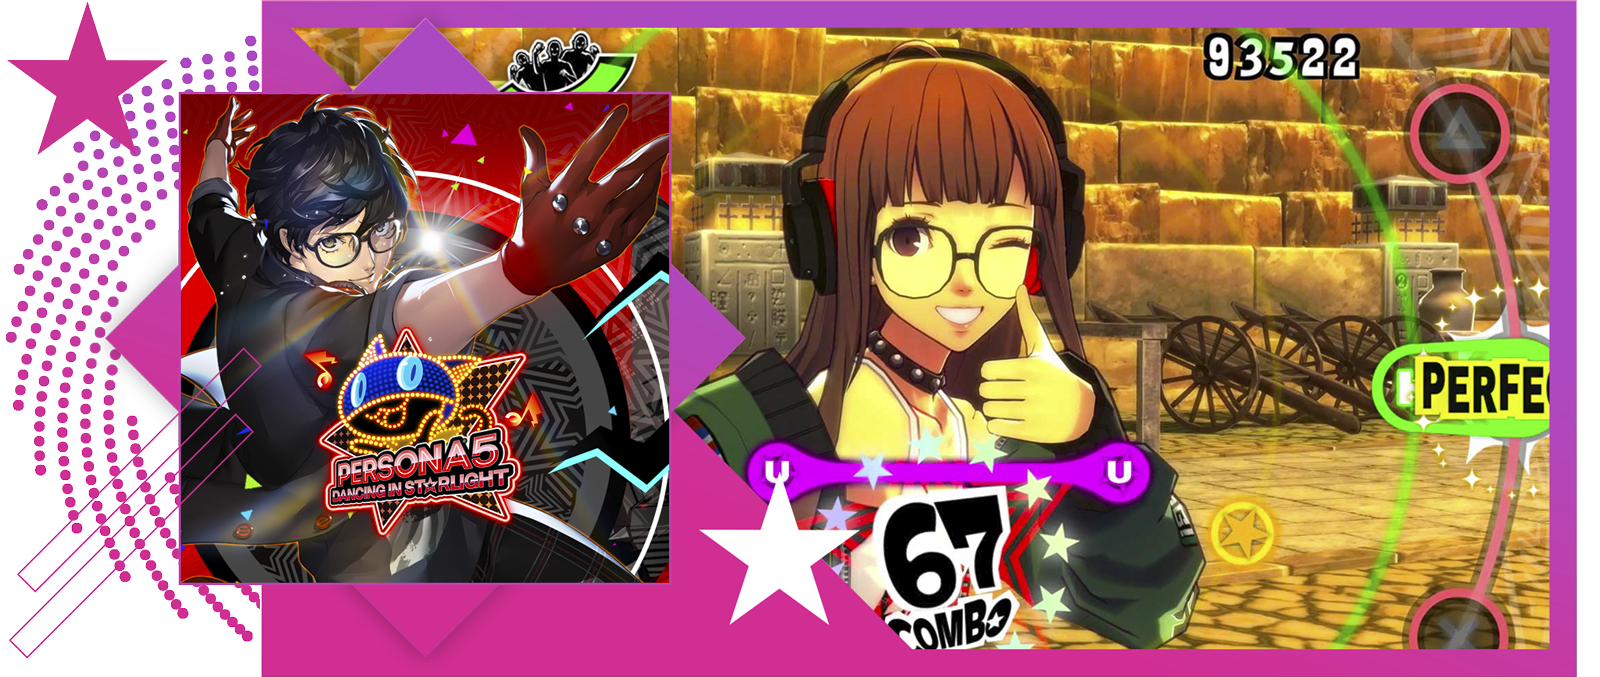 Kép a legjobb ritmusjátékok cikkhez, a Persona 5: Dancing in Starlight fő grafikájával és játékmenetével.